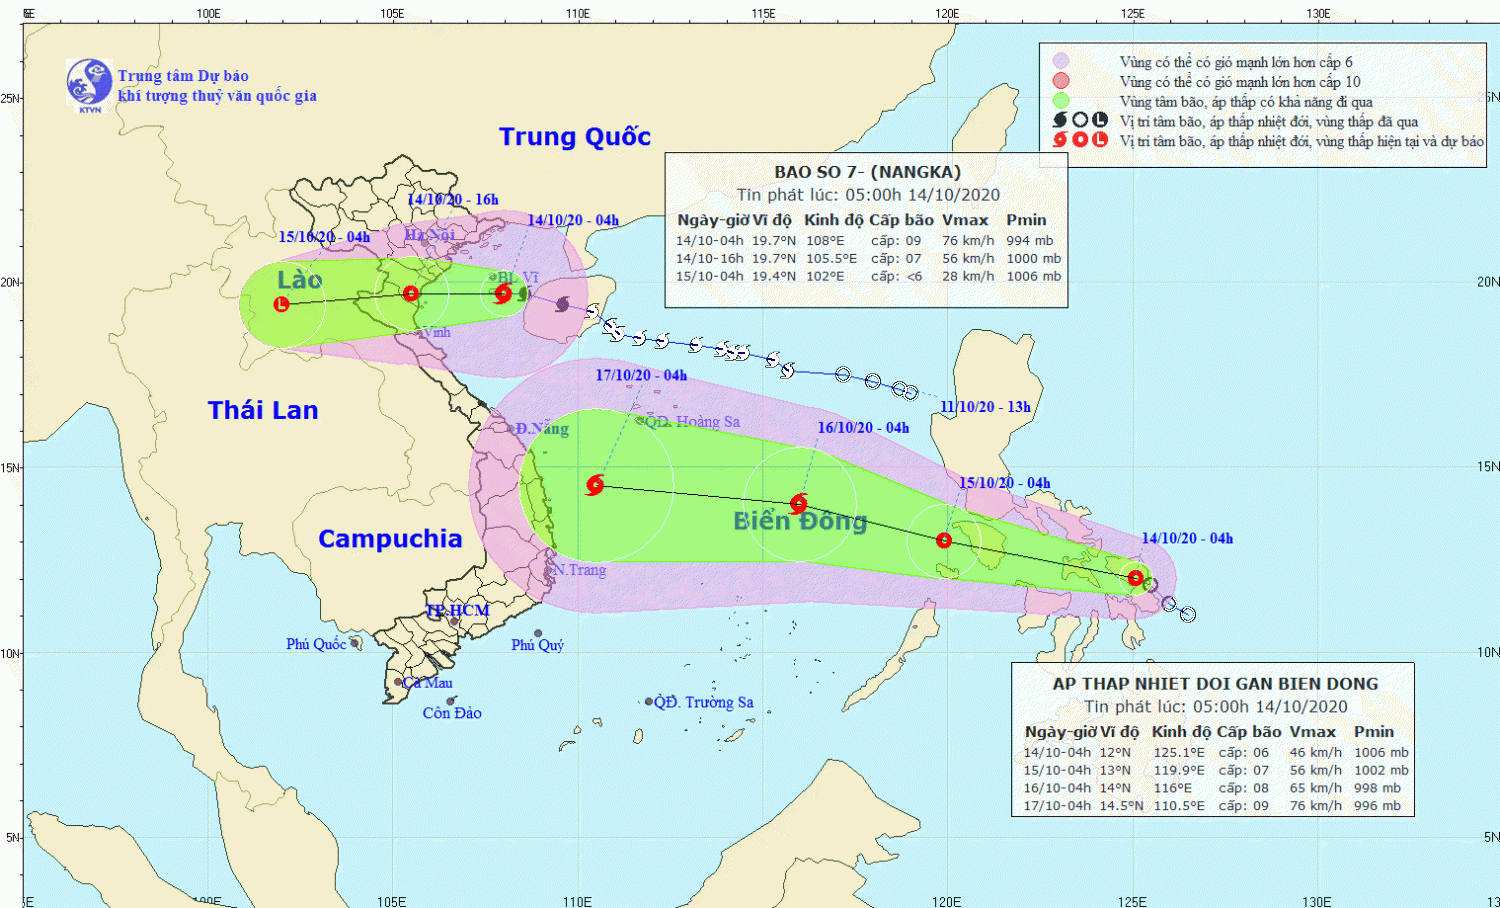 Vị trí tâm bão (07 giờ ngày 14/10): Khoảng 19,6oN; 107,7oE, trên Vịnh Bắc Bộ, ngay phía Nam đảo Bạch Long Vĩ. Sức gió mạnh nhất: cấp 8-9 (60-90km/h), giật cấp 11.